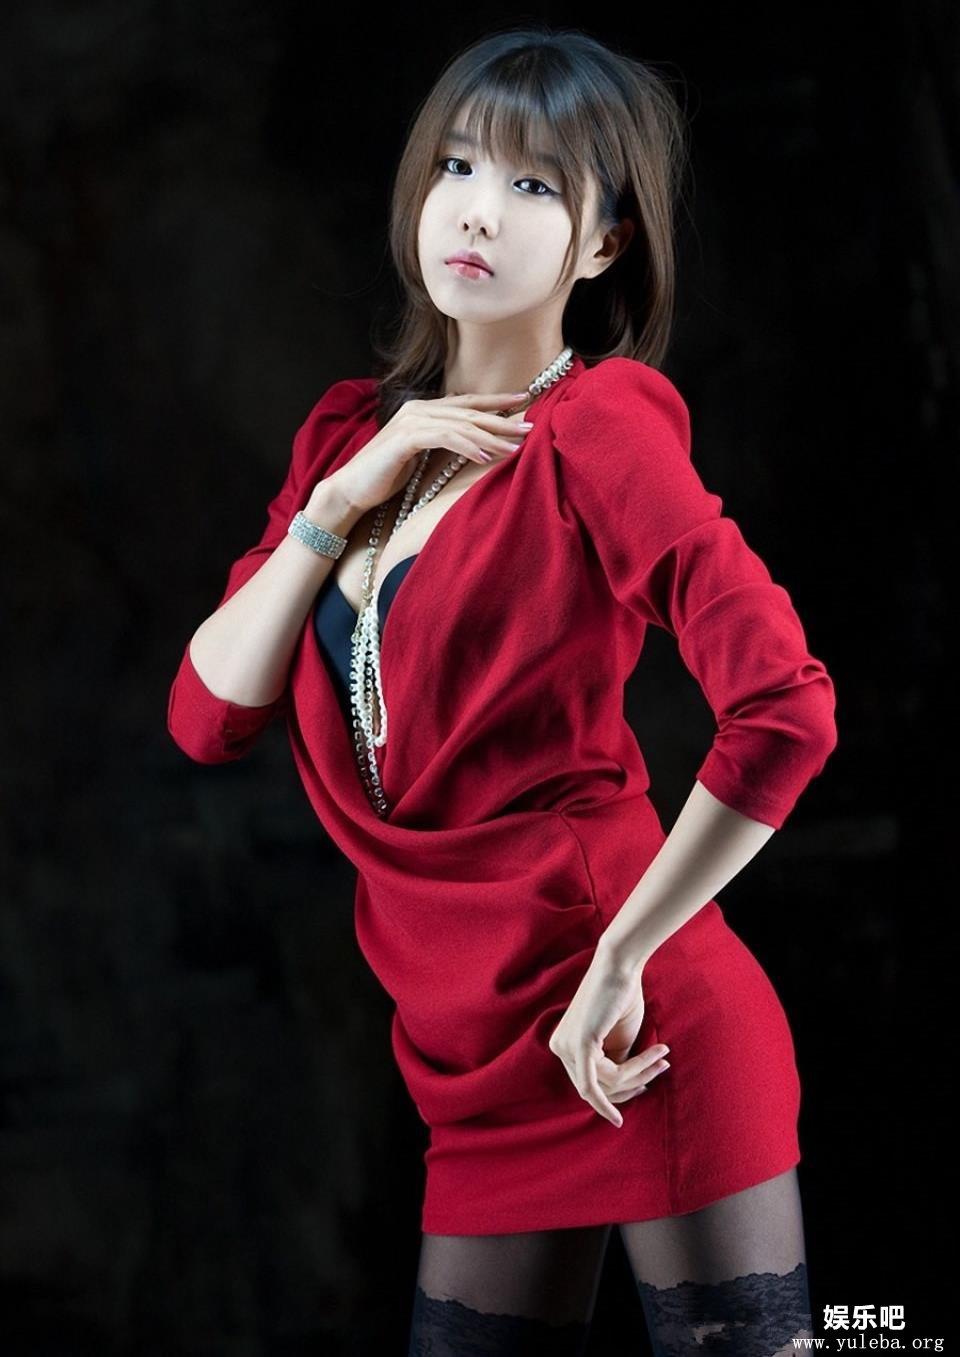 韩国ShowGirl许允美红色包臀裙黑丝袜写真,韩国ShowGirl许允美红色包臀裙黑丝袜写真